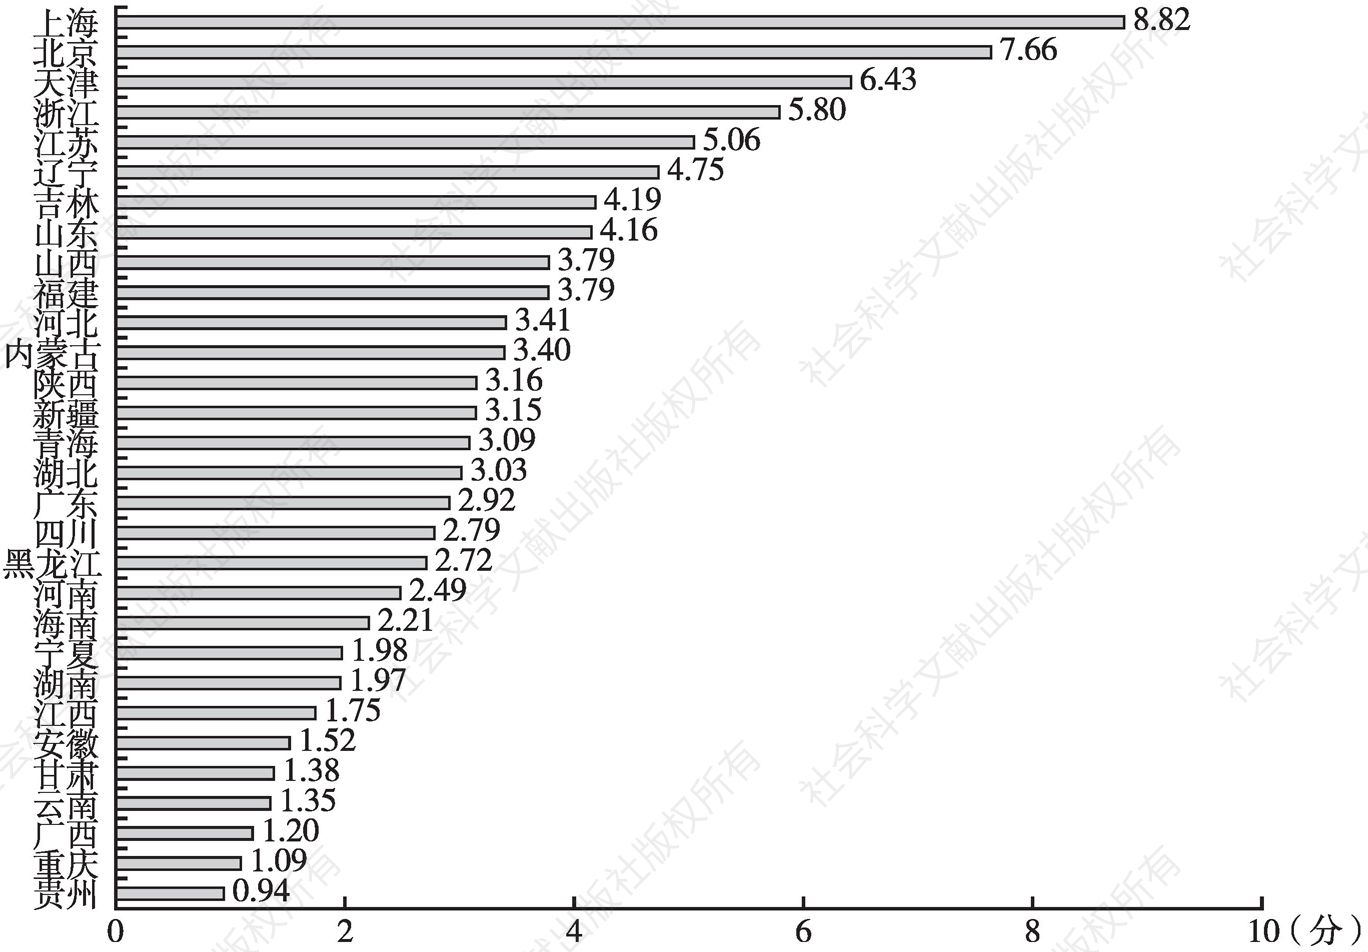 图46 30个省（区、市）人民生活的平均综合评分（2000年以来）